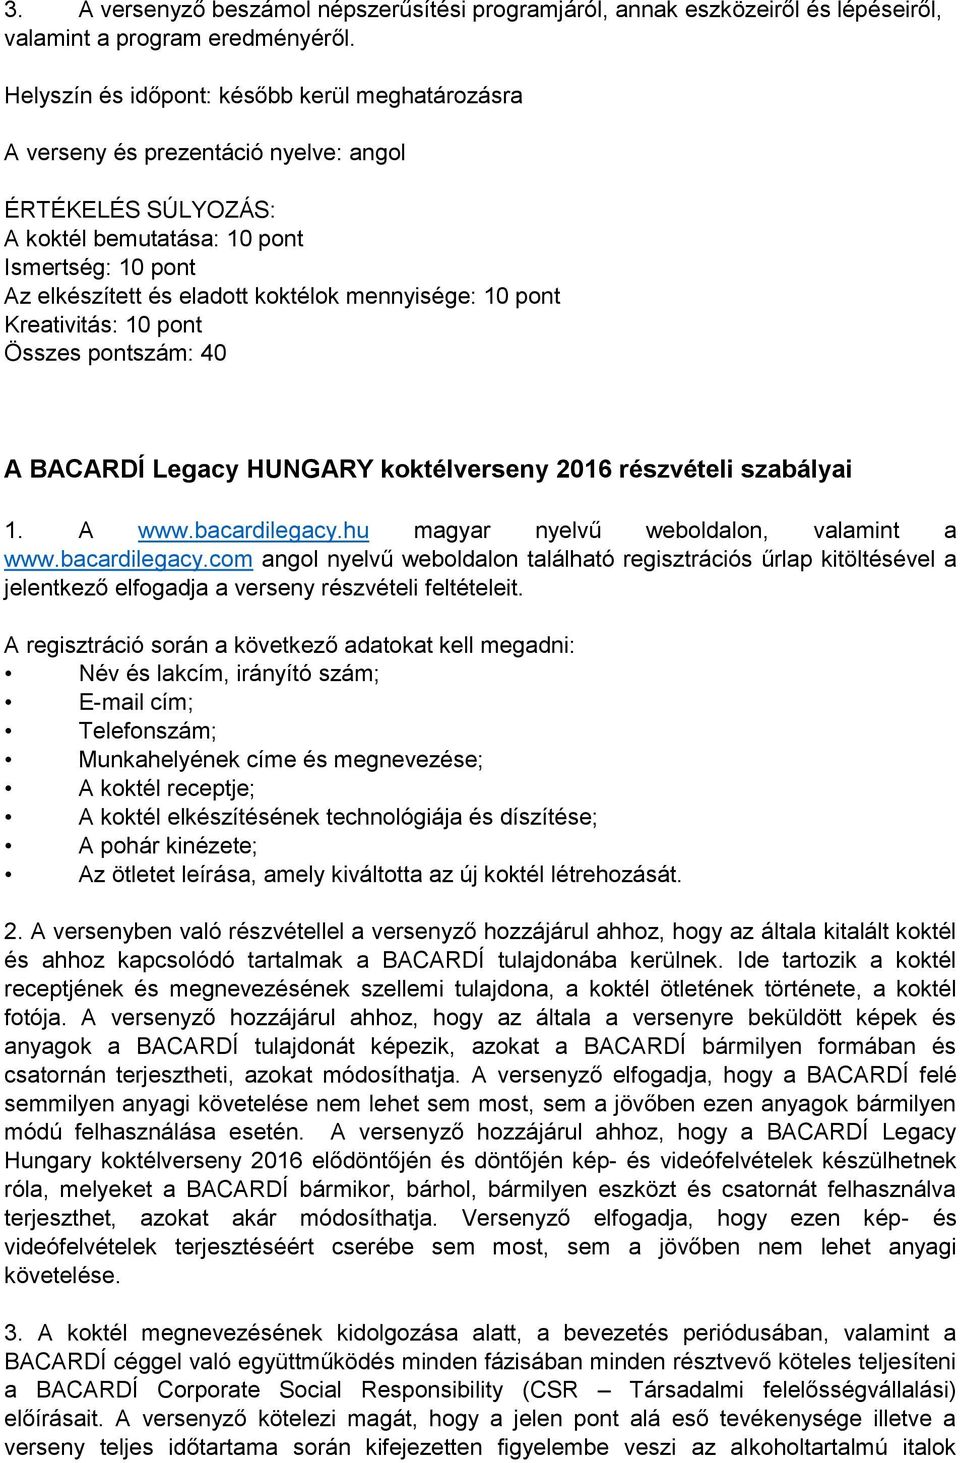 mennyisége: 10 pont Kreativitás: 10 pont Összes pontszám: 40 A BACARDÍ Legacy HUNGARY koktélverseny 2016 részvételi szabályai 1. A www.bacardilegacy.hu magyar nyelvű weboldalon, valamint a www.